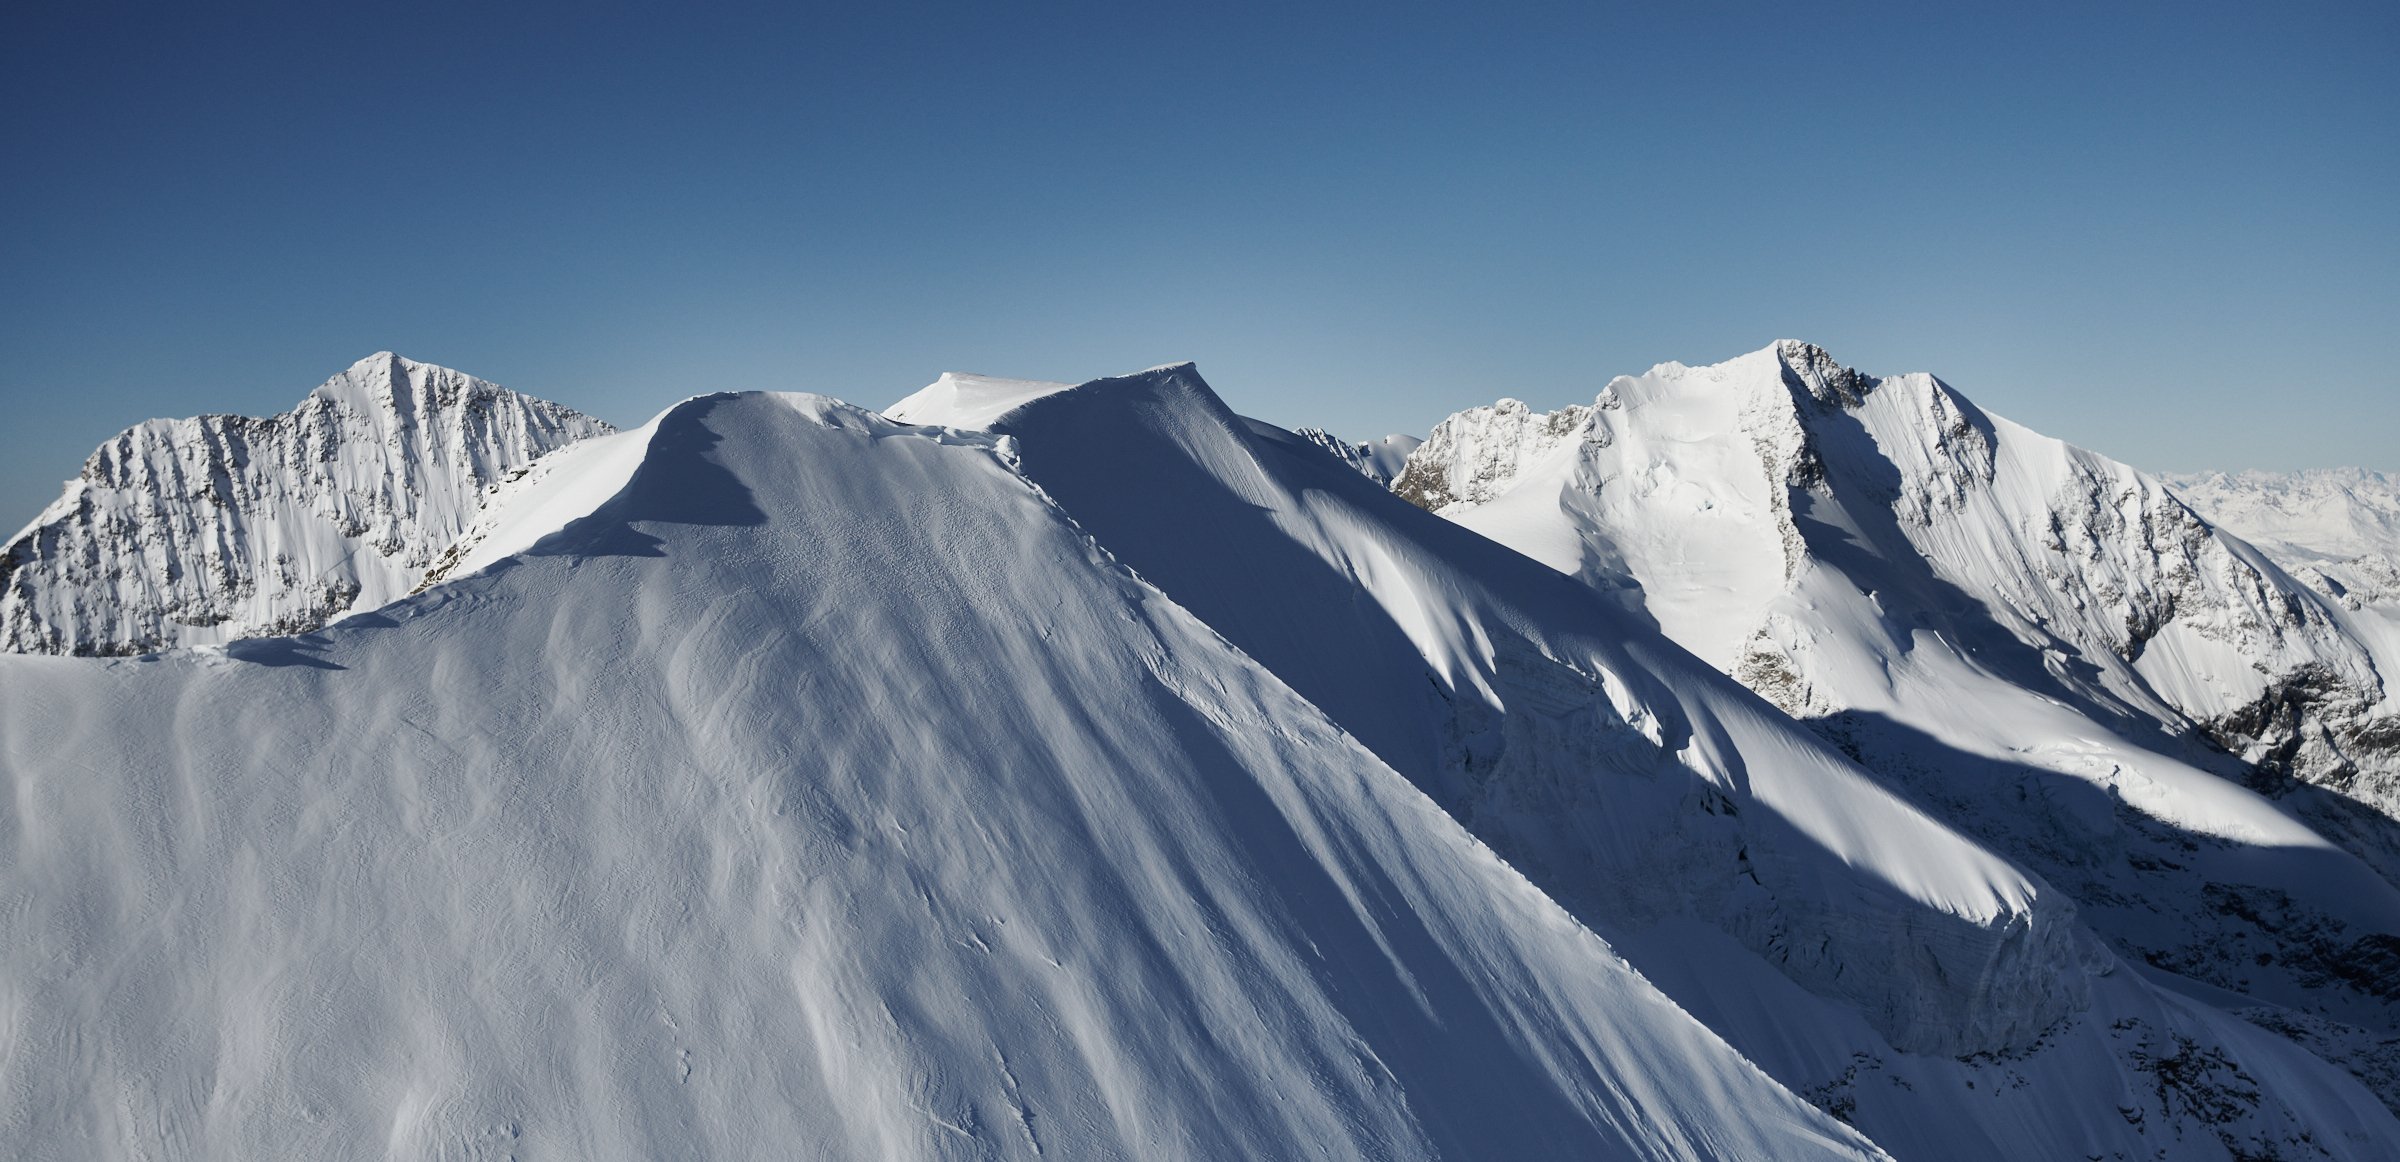 Piz Palü in den Schweizer Alpen mit dem Piz Argient auf der linken und dem Piz Bernina auf der rechten Seite - Engiadin bei St. Moritz fotografiert von Jürg Kaufmann